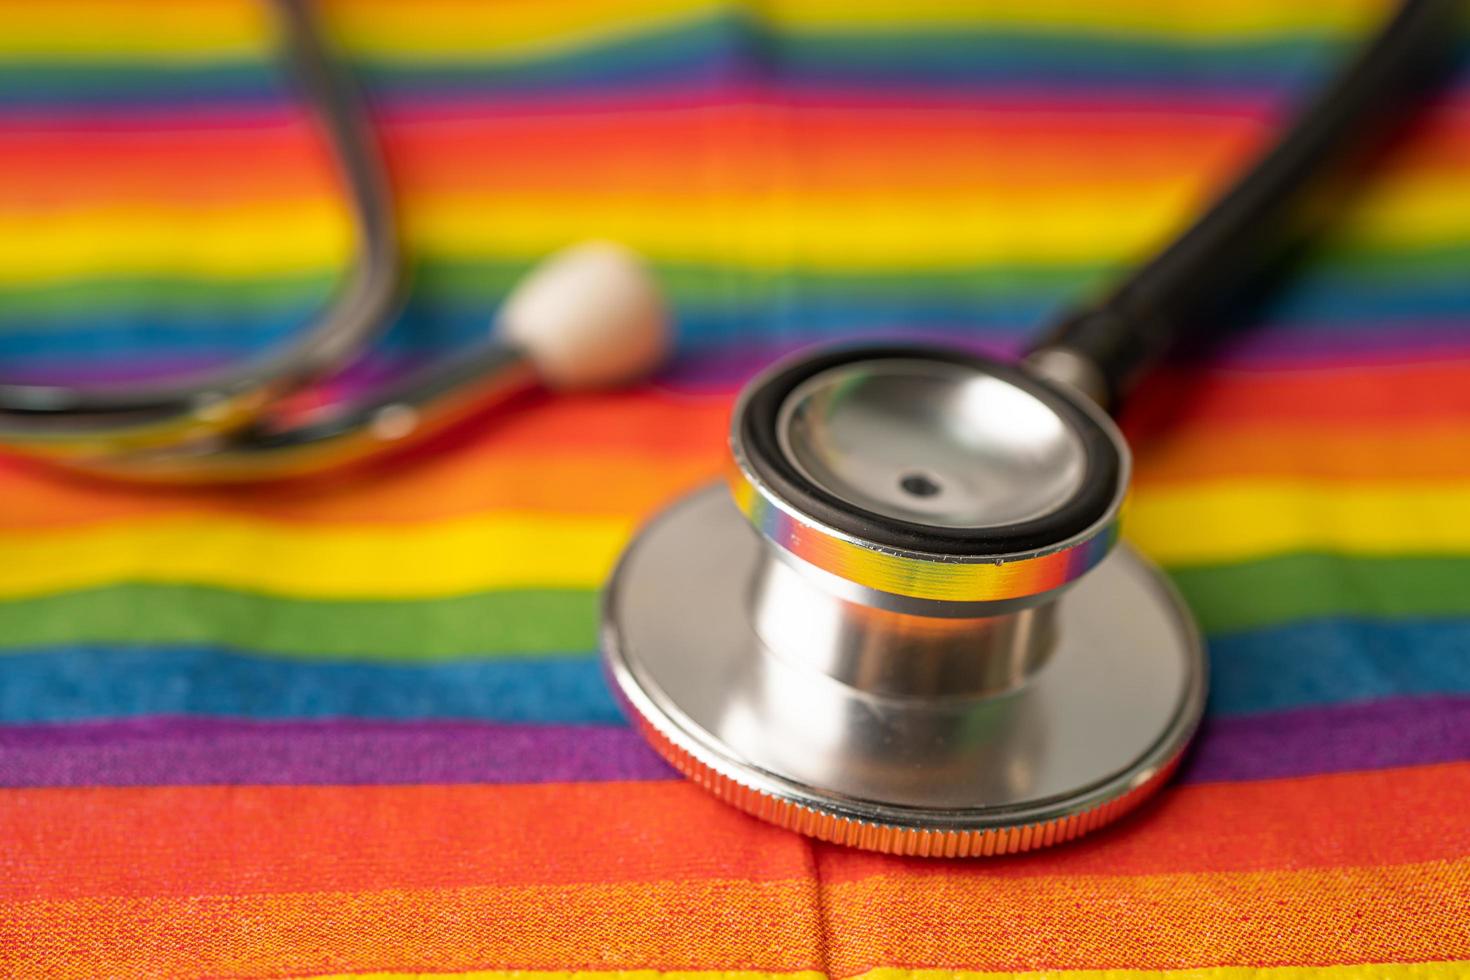 svart stetoskop på regnbågsflaggabakgrund, symbol för HBT stolthet månad firar årliga i juni sociala, symbol för homosexuella, lesbiska, bisexuella, transpersoner, mänskliga rättigheter och fred. foto